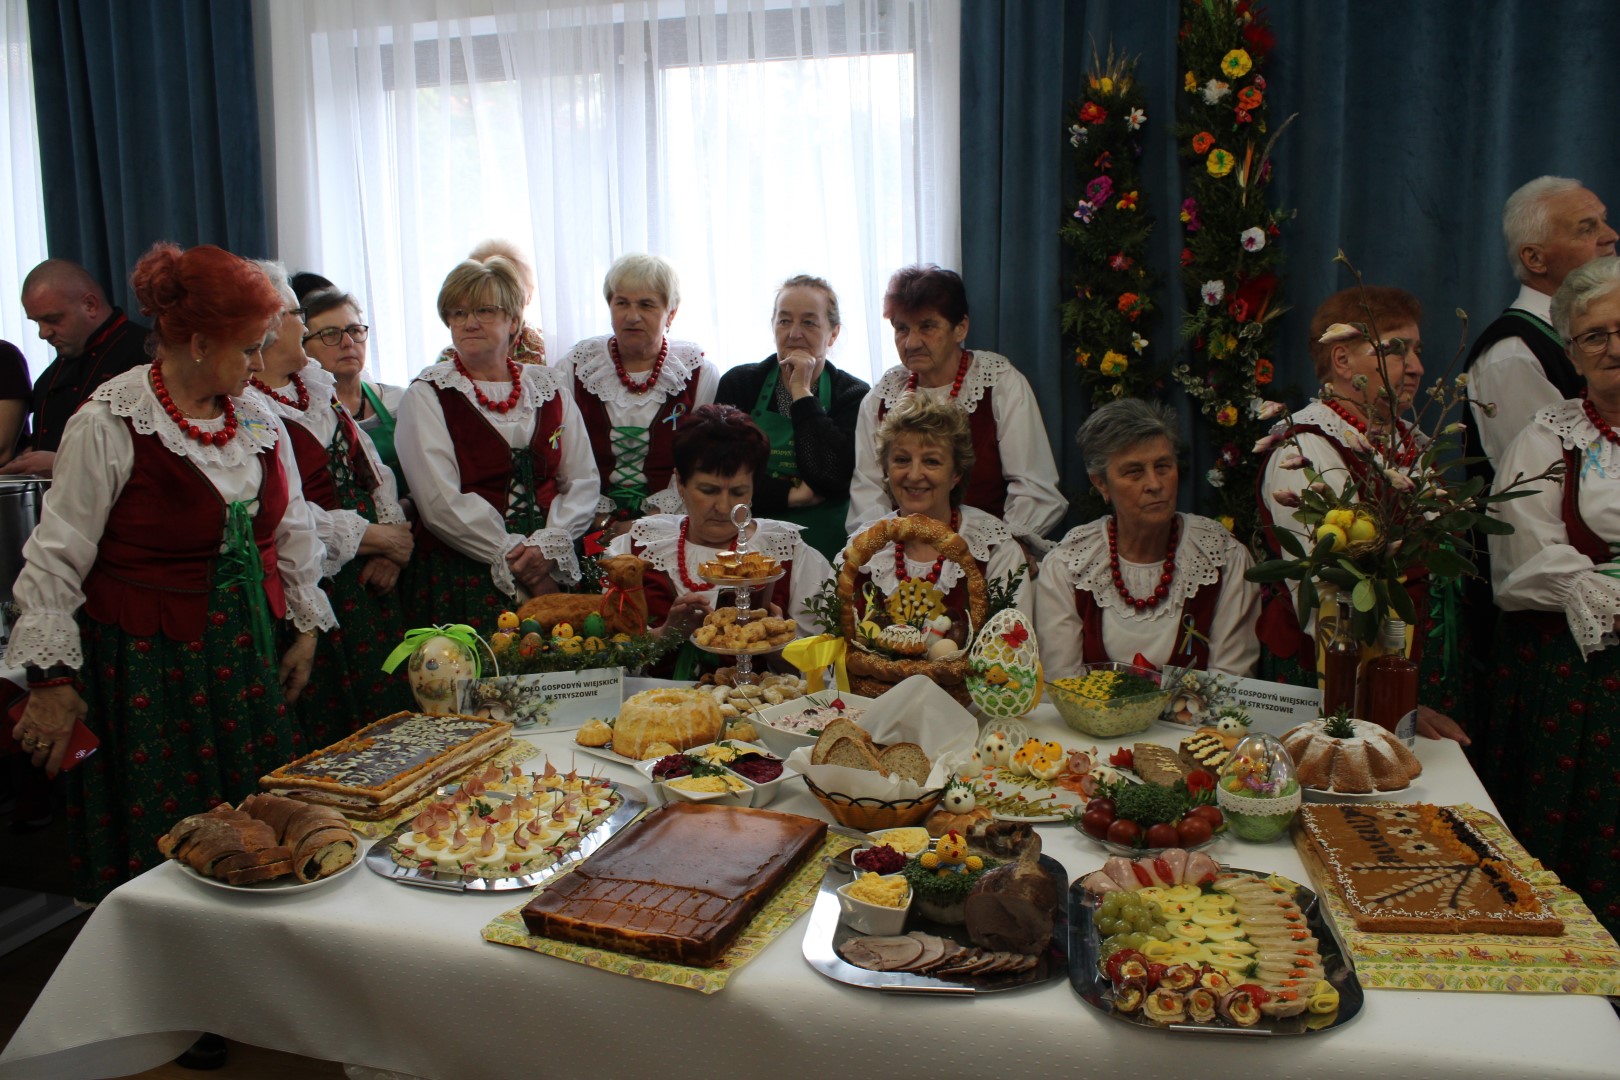 Grupa kobiet przebranan w tradycyjne stroje przed nimi stół z wilkanocnymi spejałami.